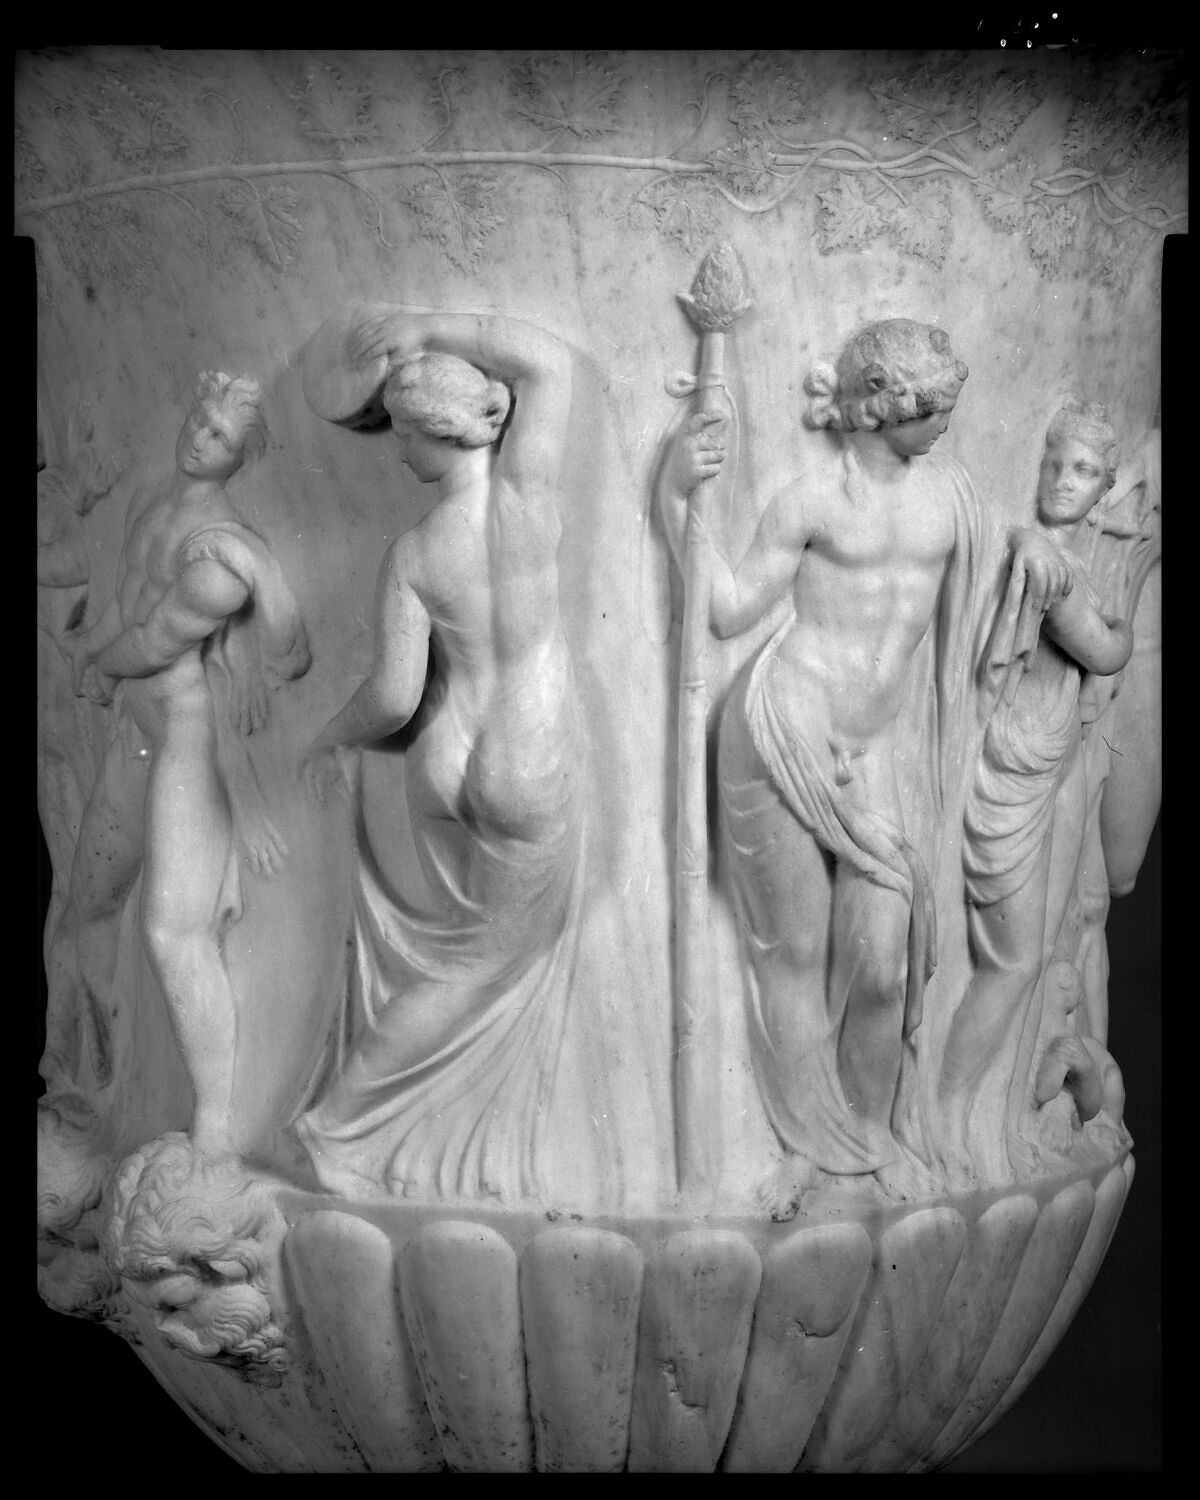 Schwarz-Weiß-Fotografie einer Borghese-Vase aus der Sammlung des Louvre mit der Darstellung einer tanzenden Mänade wie auf der Zeichnung aus der Sammlung der Staatlichen Kunsthalle Karlsruhe. 